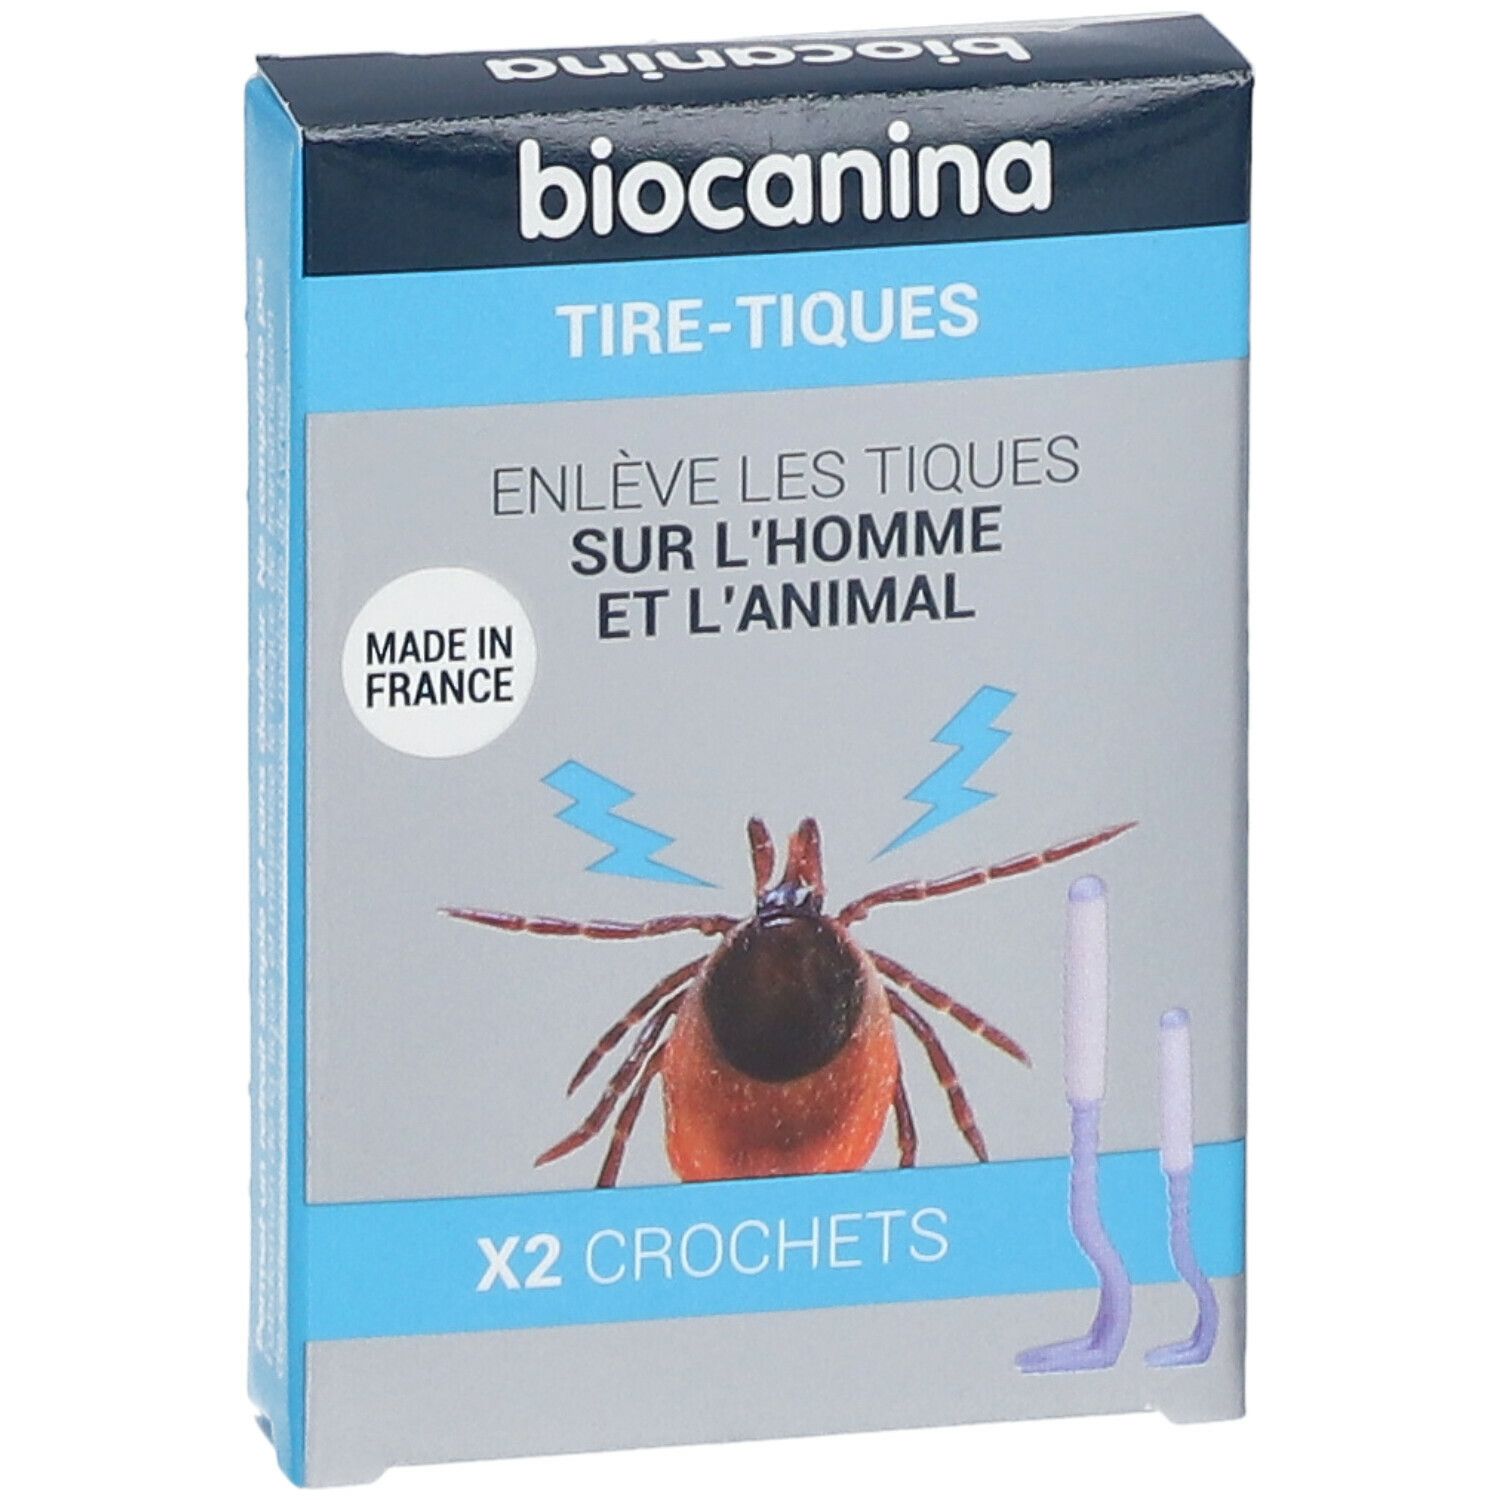 biocanina Tire-Tiques